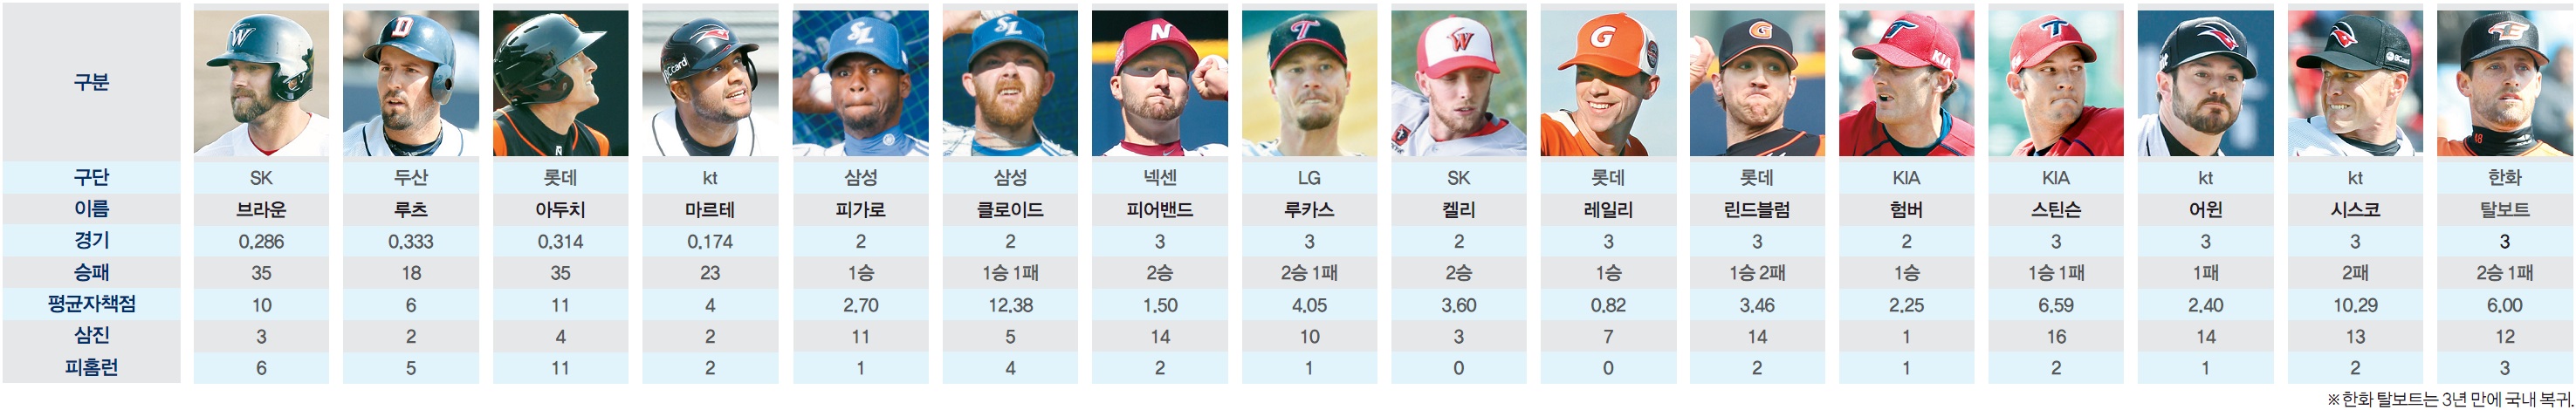 2015 시즌 새 외국인 선수들의 시범경기 성적..jpg